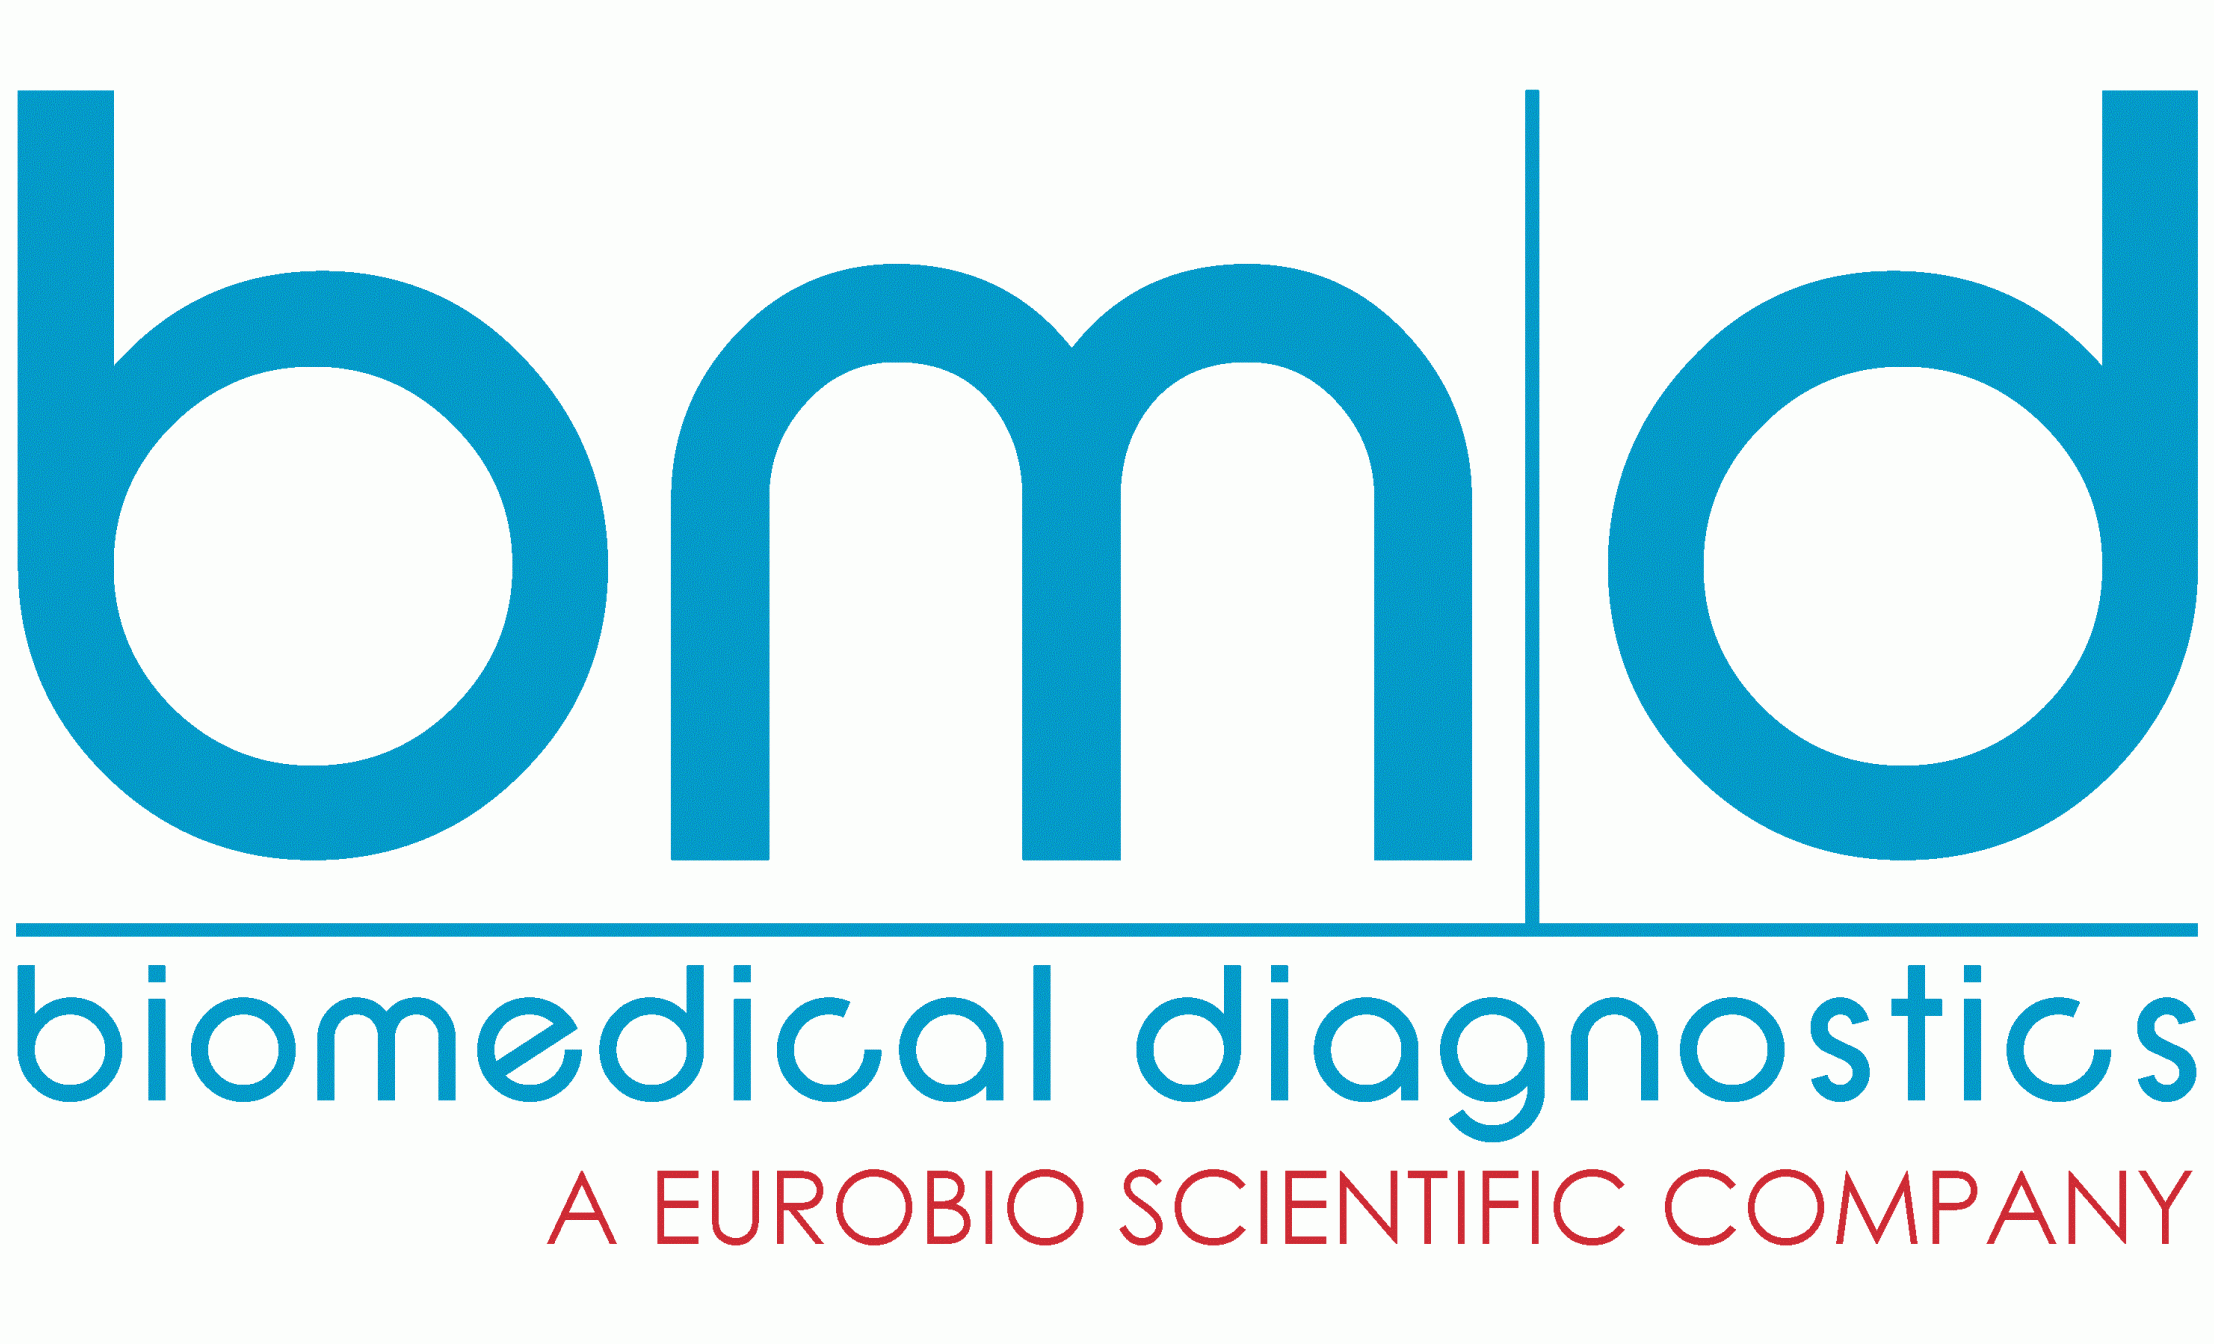 Biomedical diagnostics